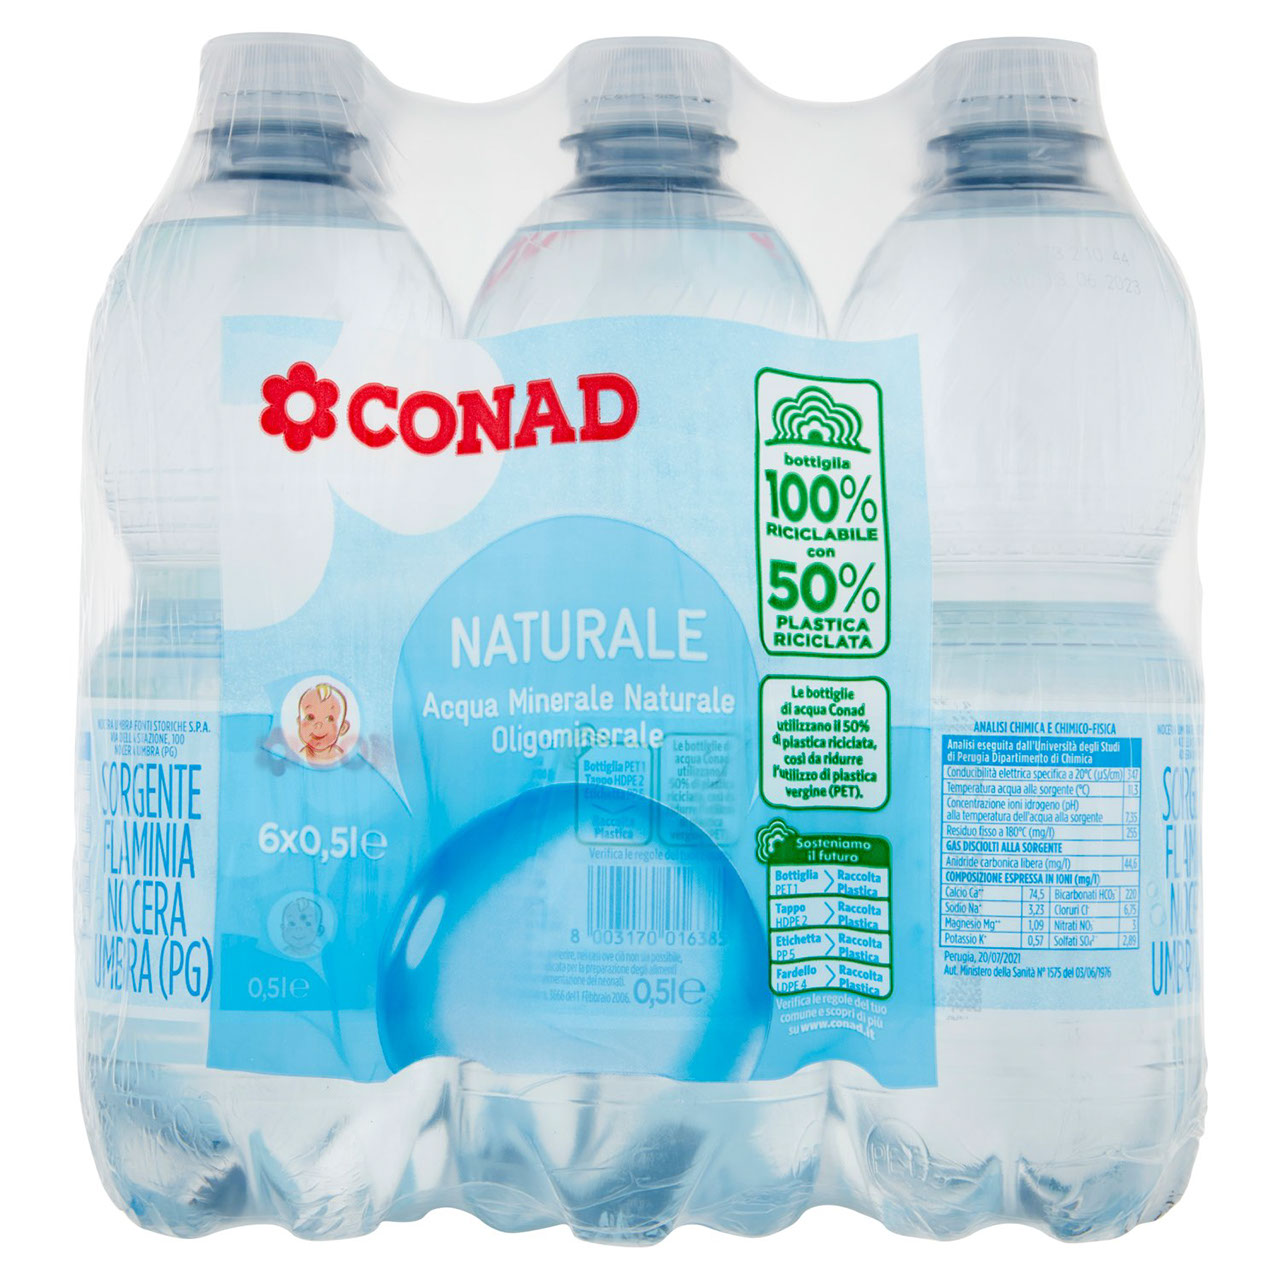 CONAD Acqua Minerale Naturale 6 x 0,5 l